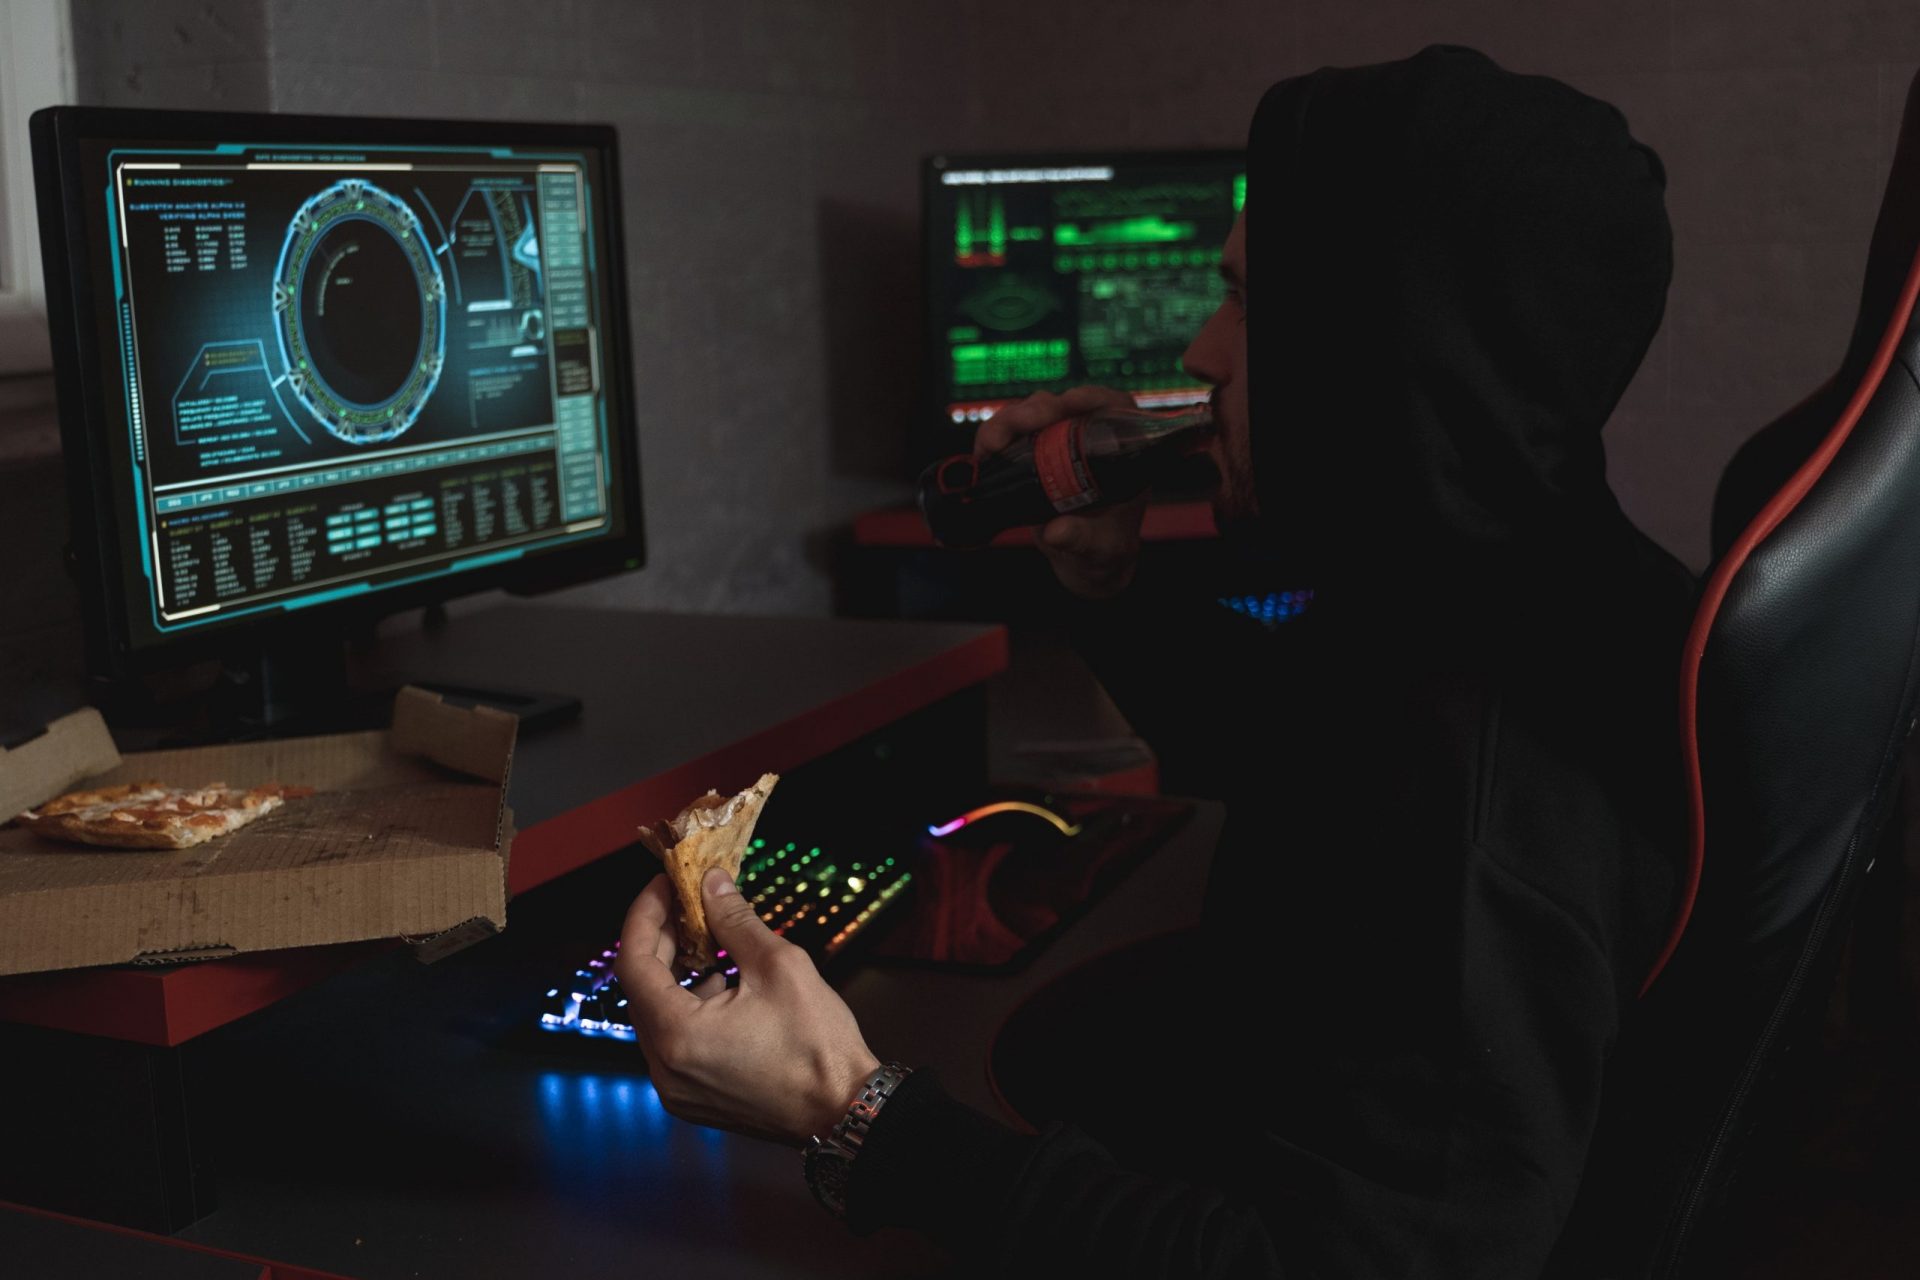 Man sieht eine Person, die im Schatten vor zwei Monitoren sitzt und einen Hacker darstellen soll. Das Thema ist die Red Team Blue Team Übung. Bild: Pexels/Tima Miroshnichenko